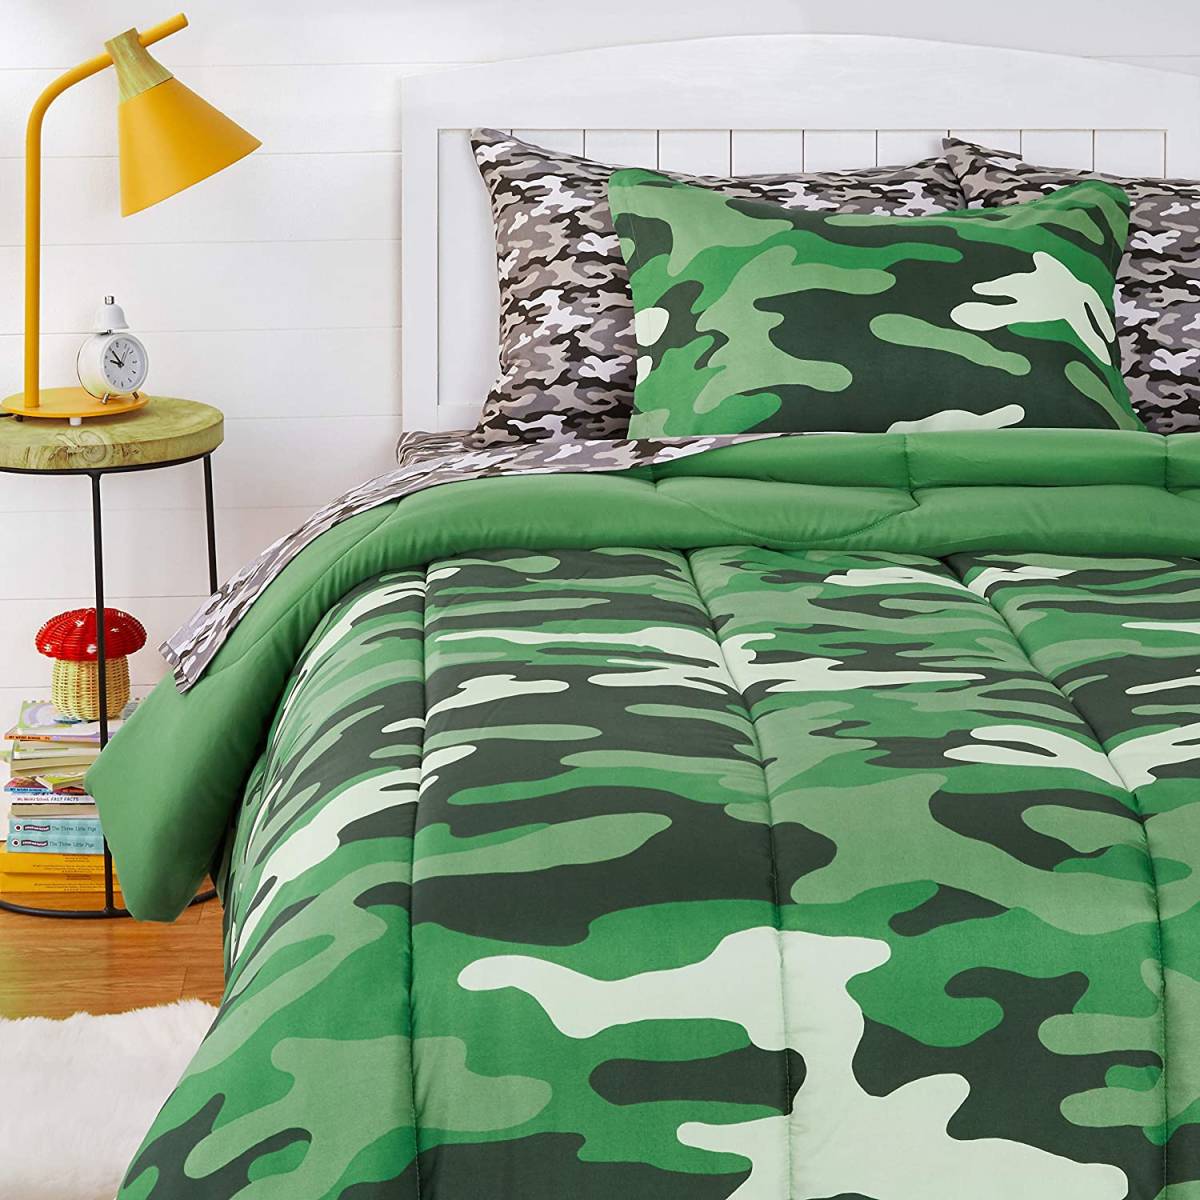  бесплатная доставка новый товар Amazon Basic ватное одеяло постельные принадлежности комплект Kids для микроволокно материалы камуфляж k roots in 